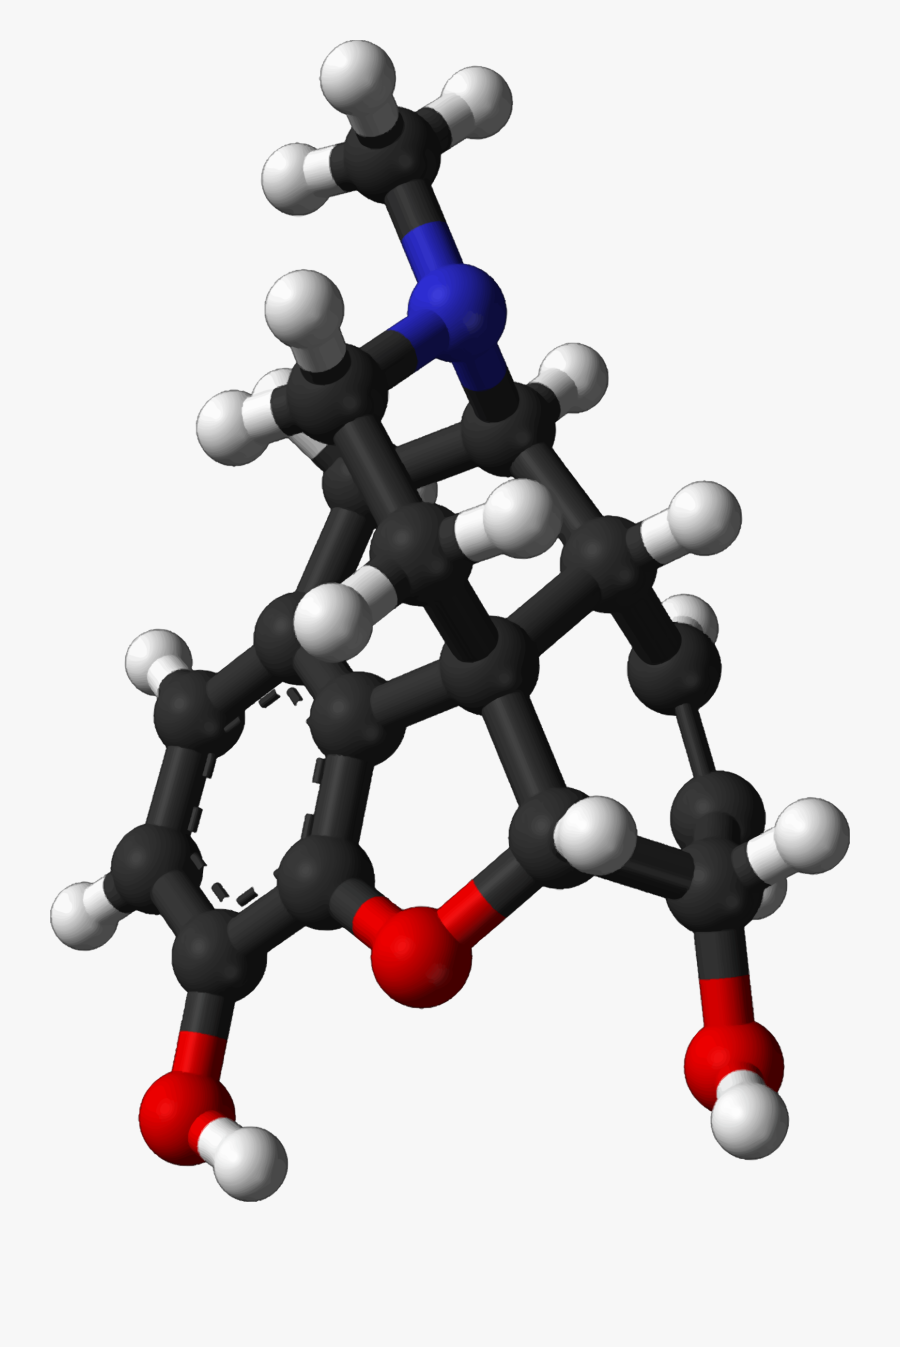 Joint,morphine,molecule - Endorphins Structure, Transparent Clipart